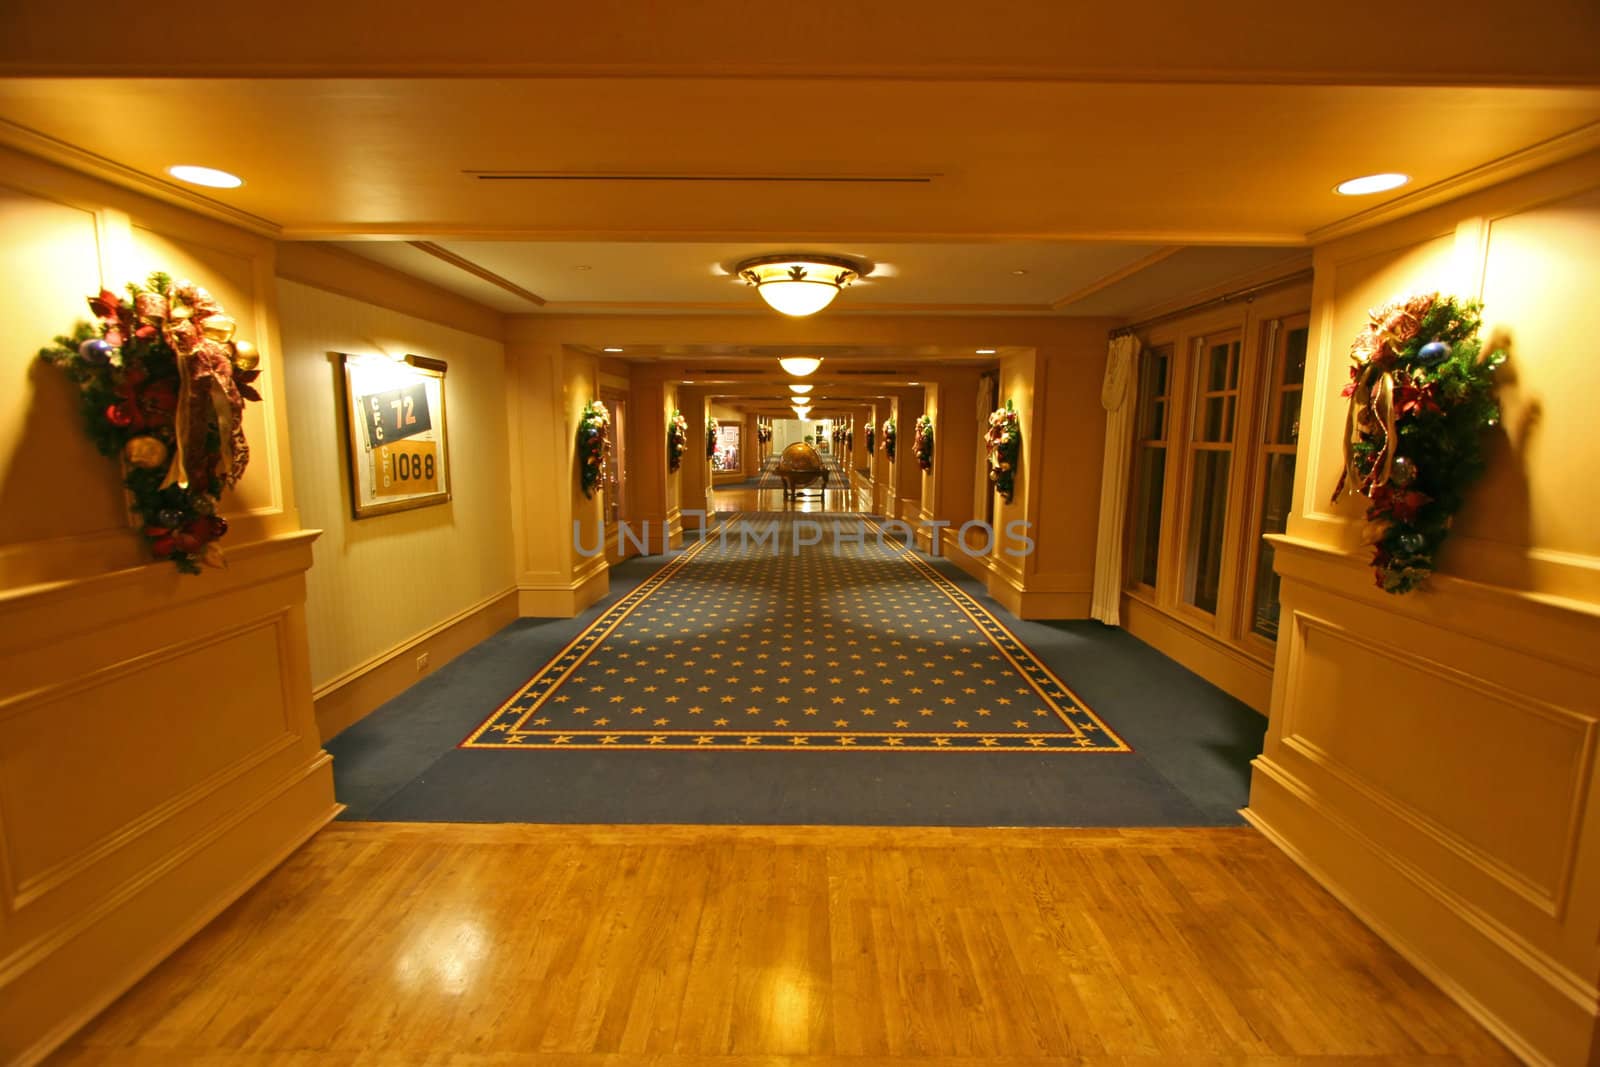 Hotel Corridor by quackersnaps